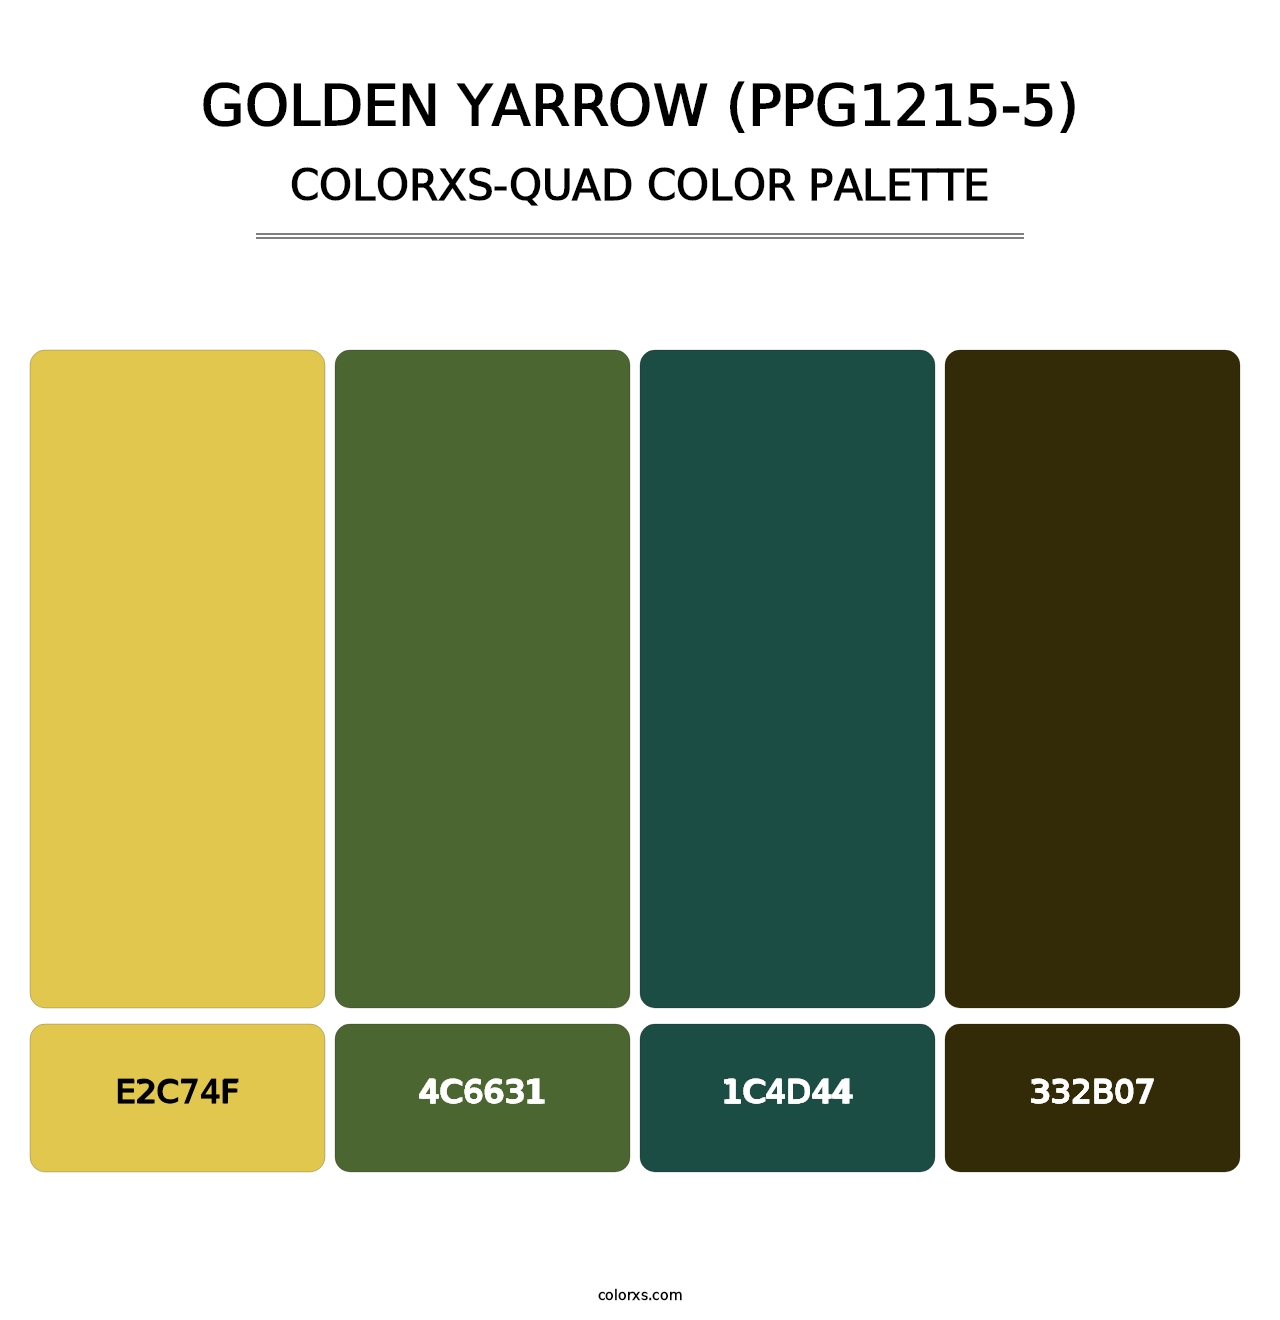 Golden Yarrow (PPG1215-5) - Colorxs Quad Palette